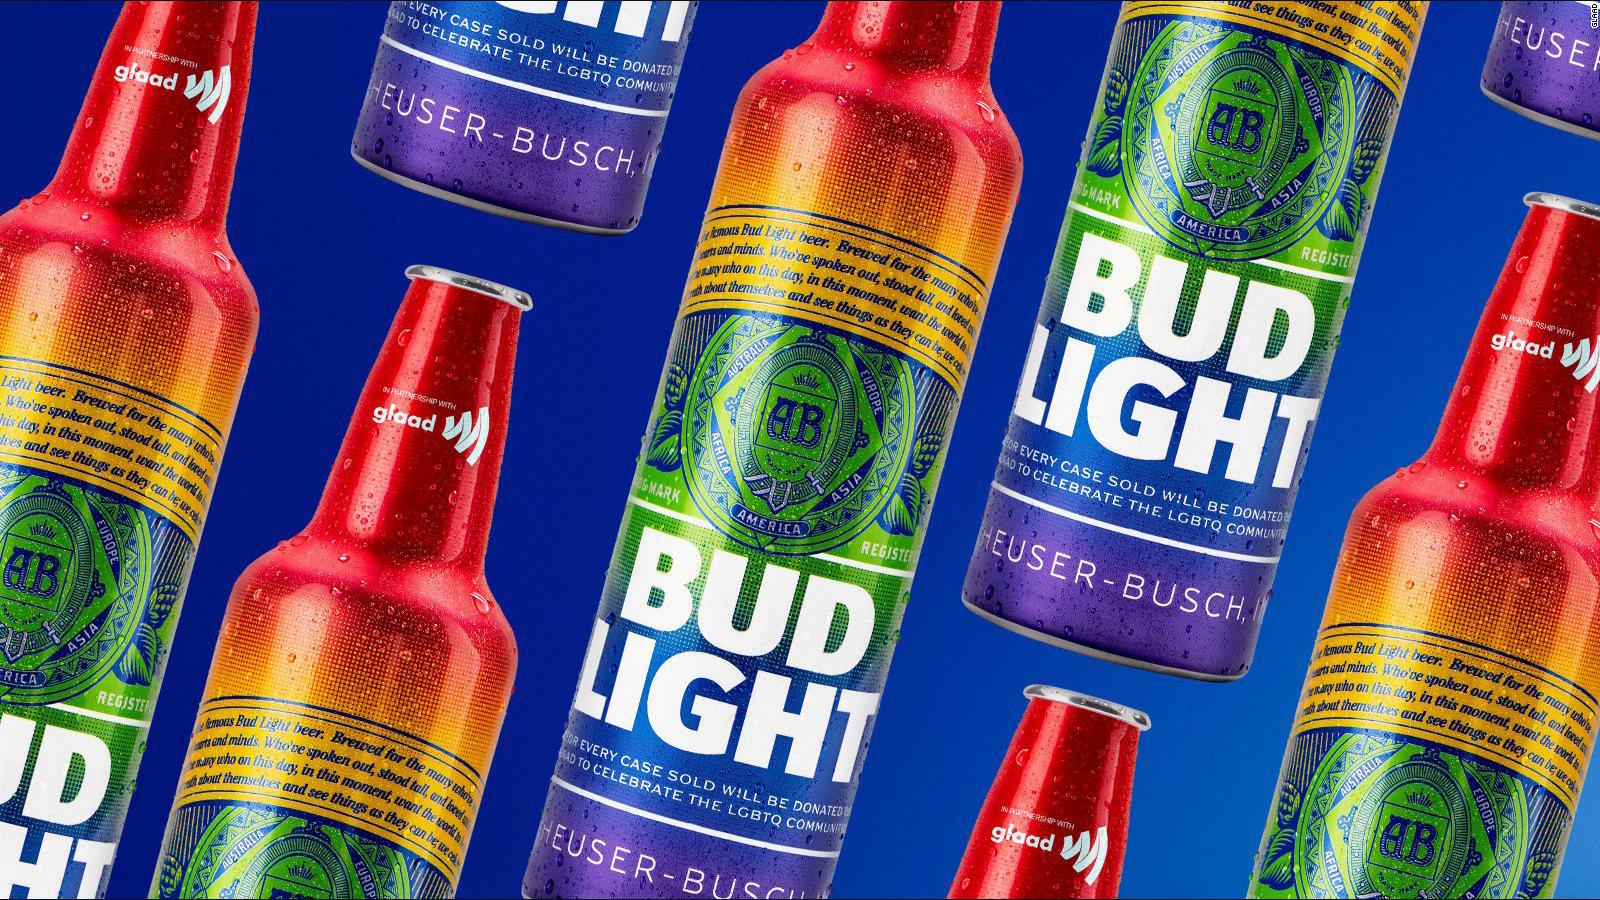 Bud Light is selling beer in rainbow bottles in June to celebrate Pride